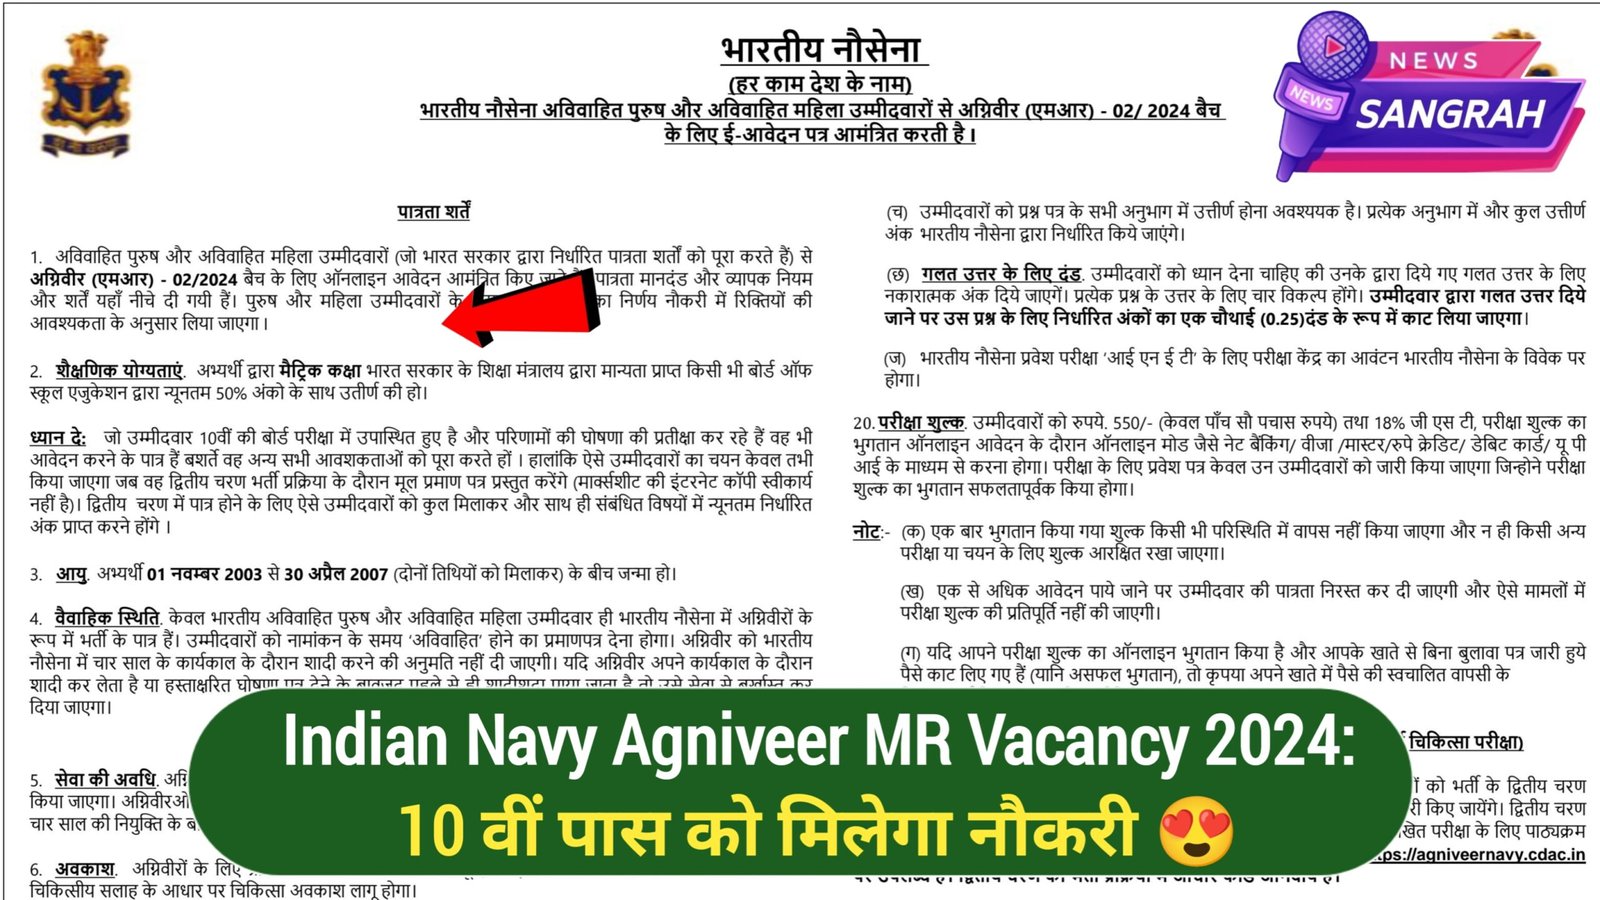 Indian Navy Agniveer MR Vacancy 2024